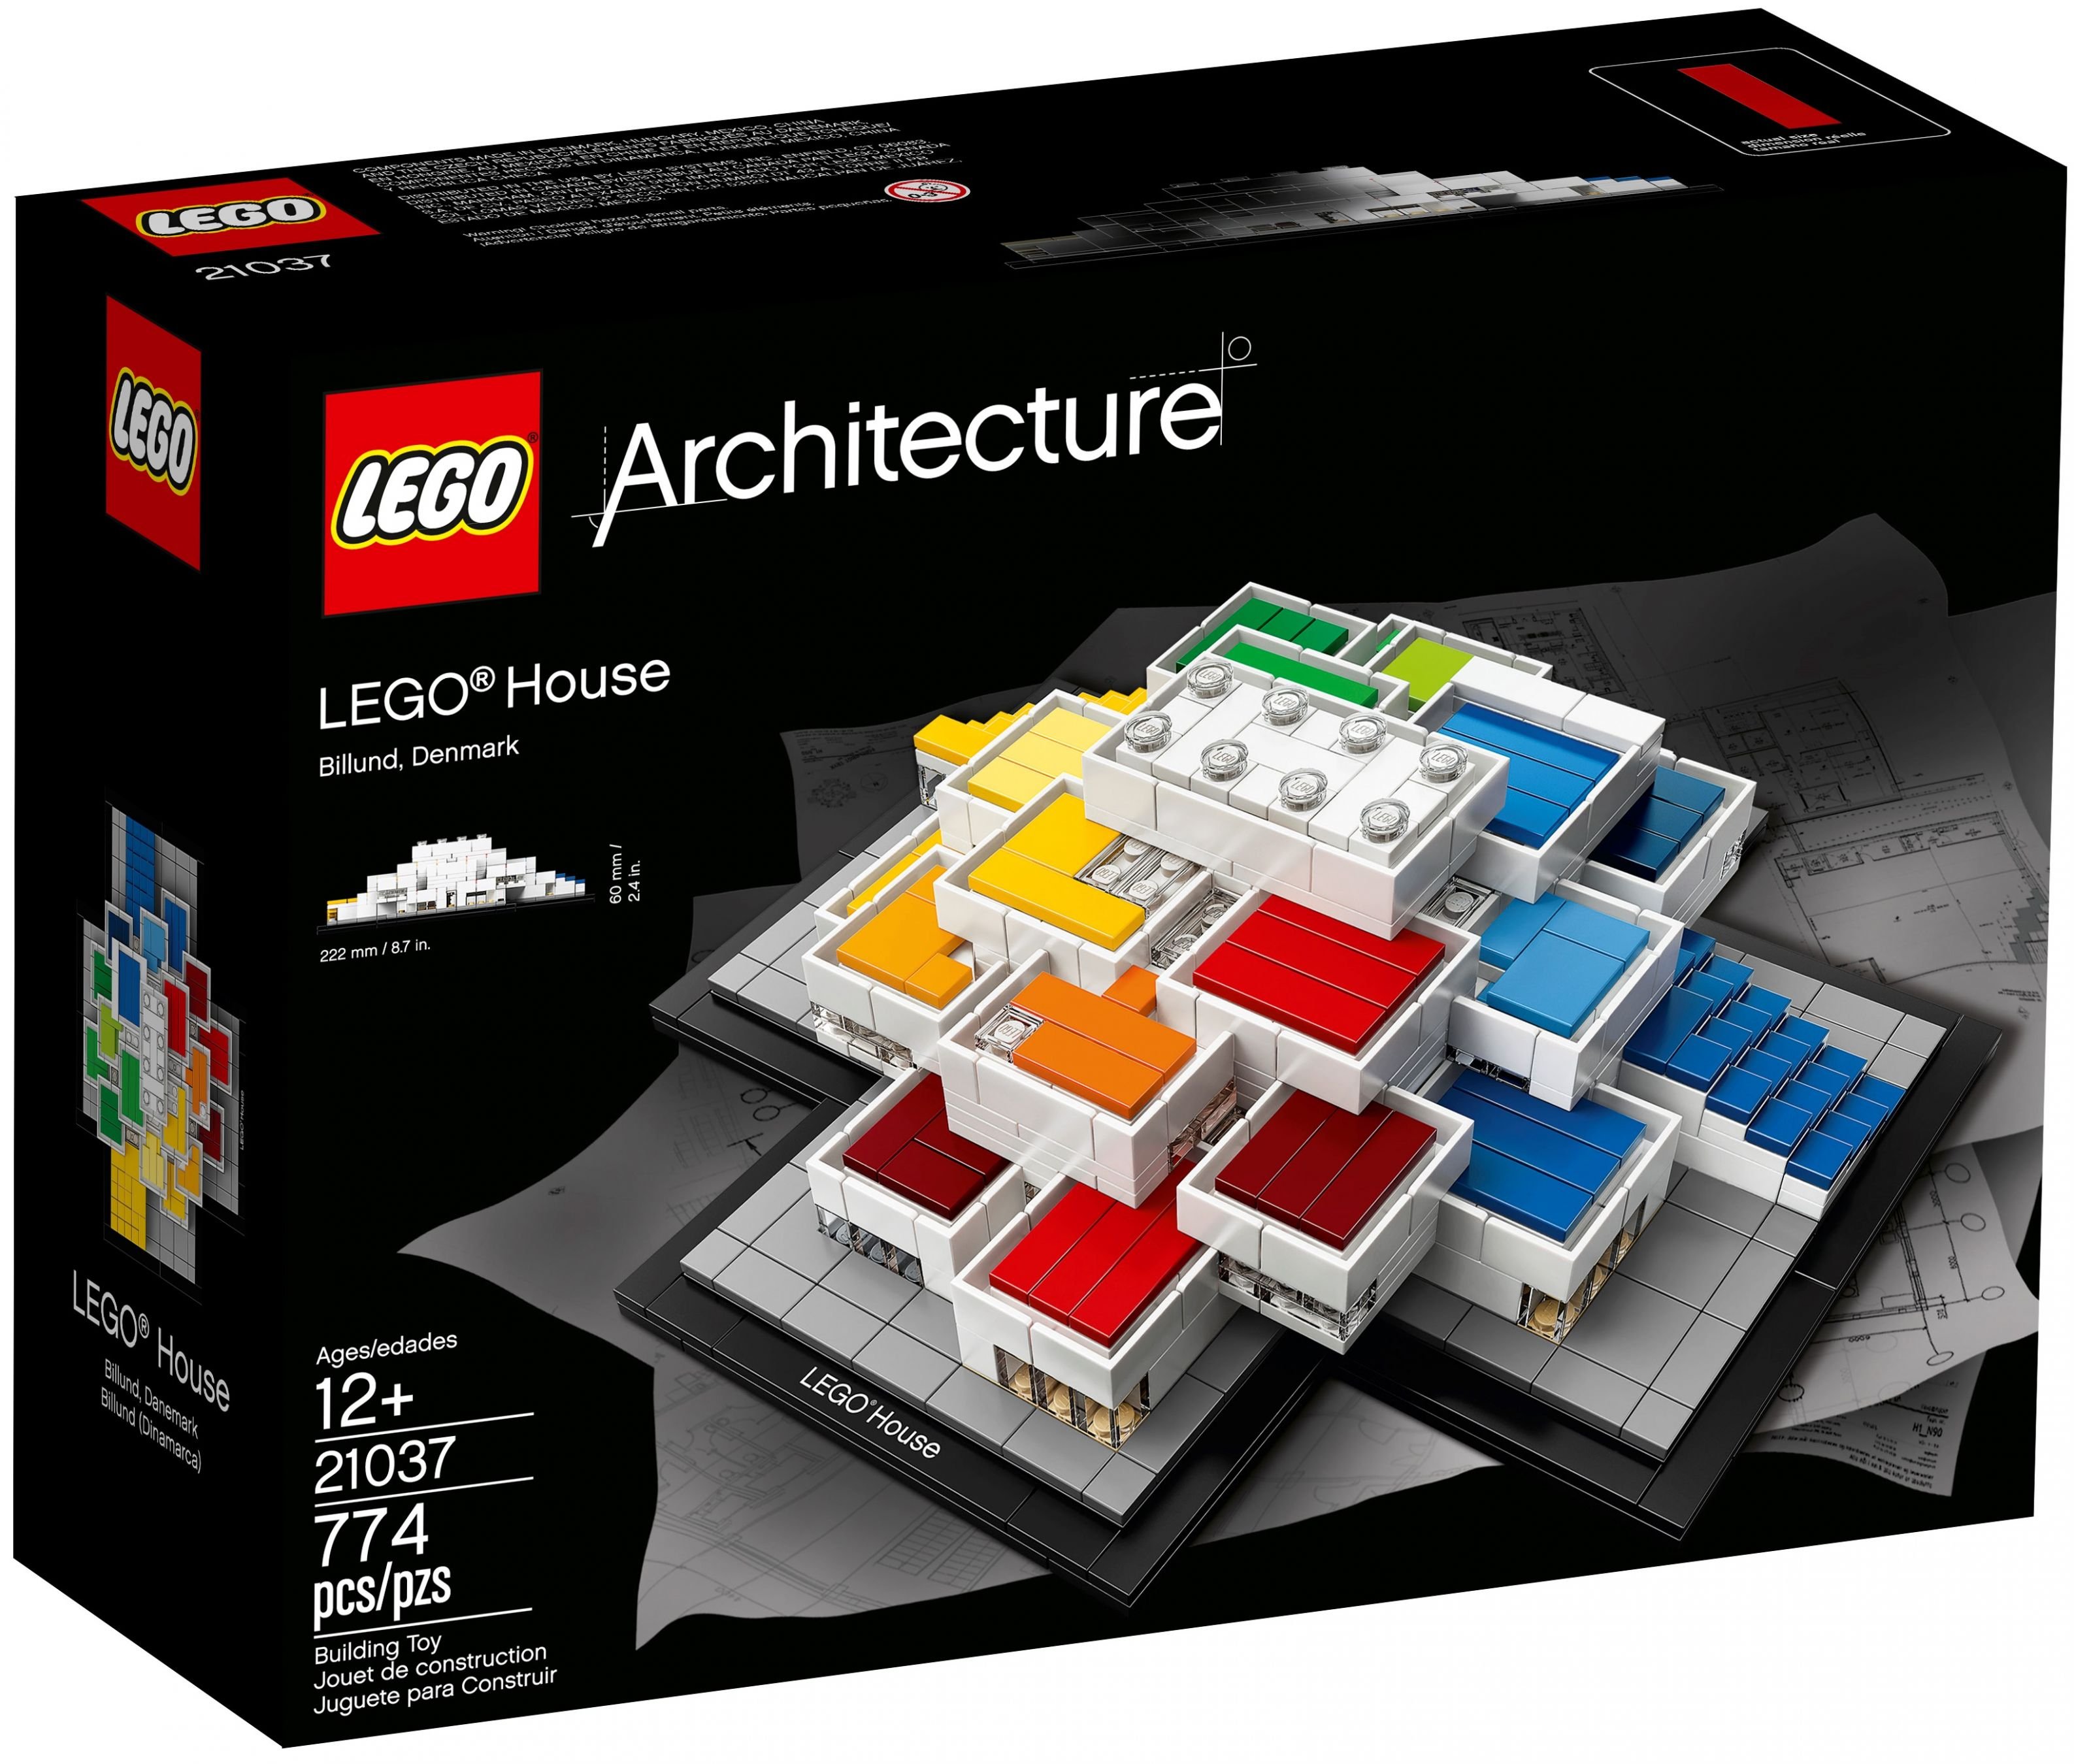 LEGO Architecture 21037 LEGO® House LEGO_21037_alt1.jpg